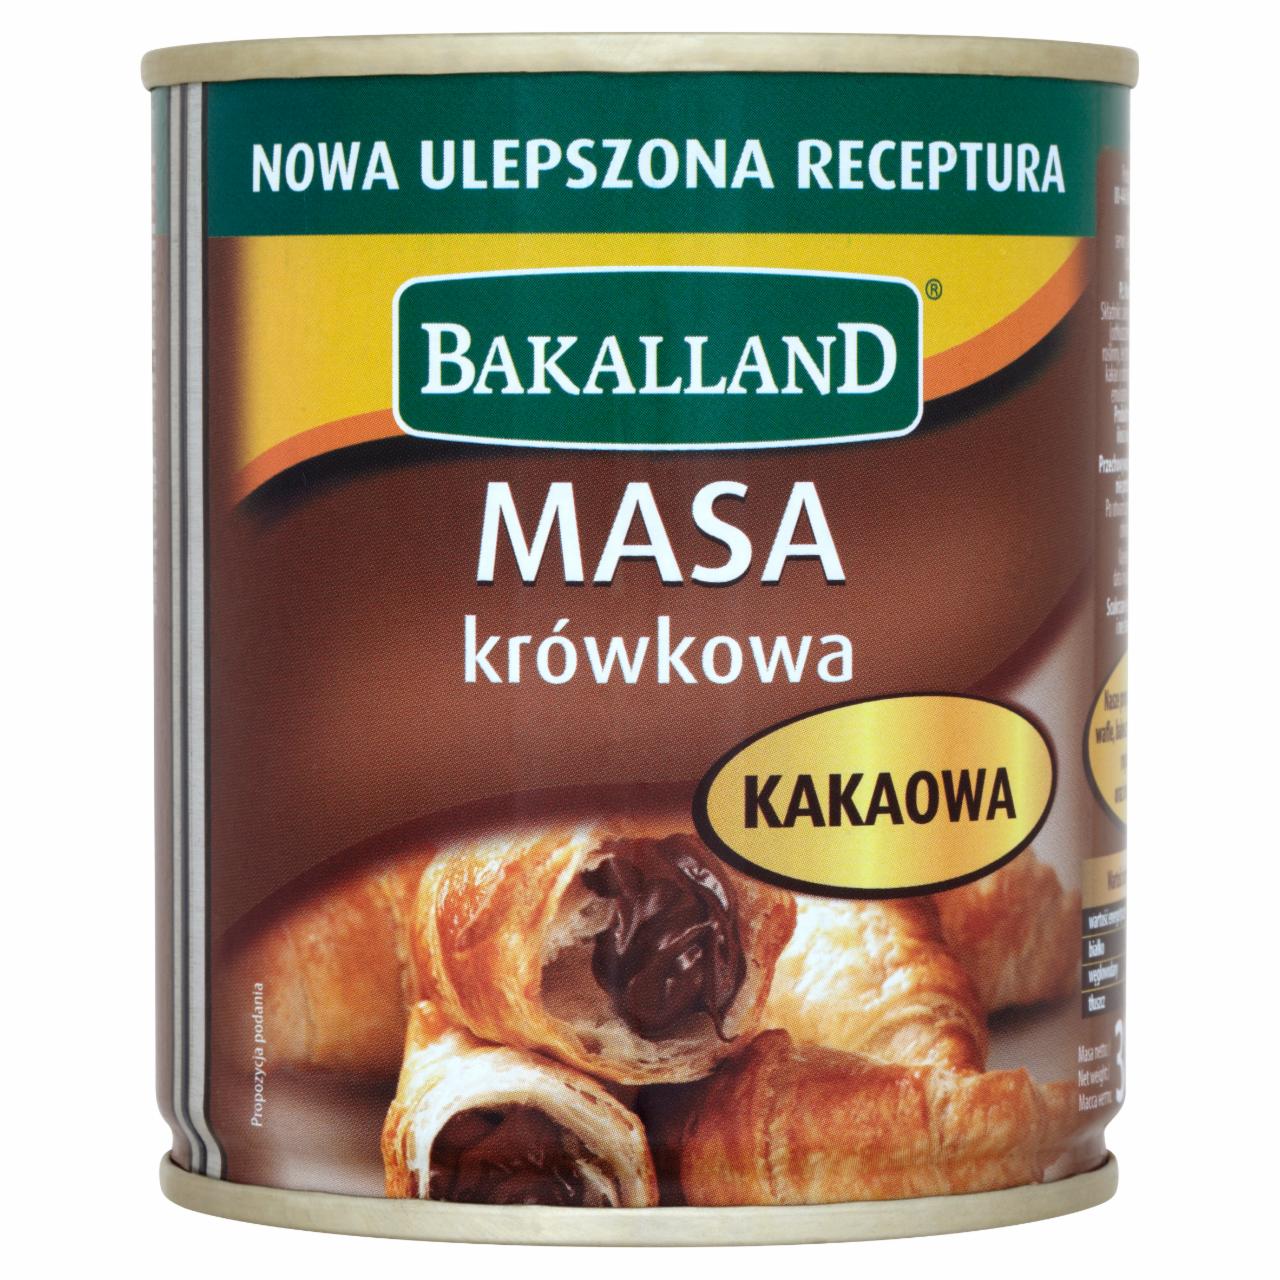 Zdjęcia - Bakalland Masa krówkowa o smaku kakaowym 380 g